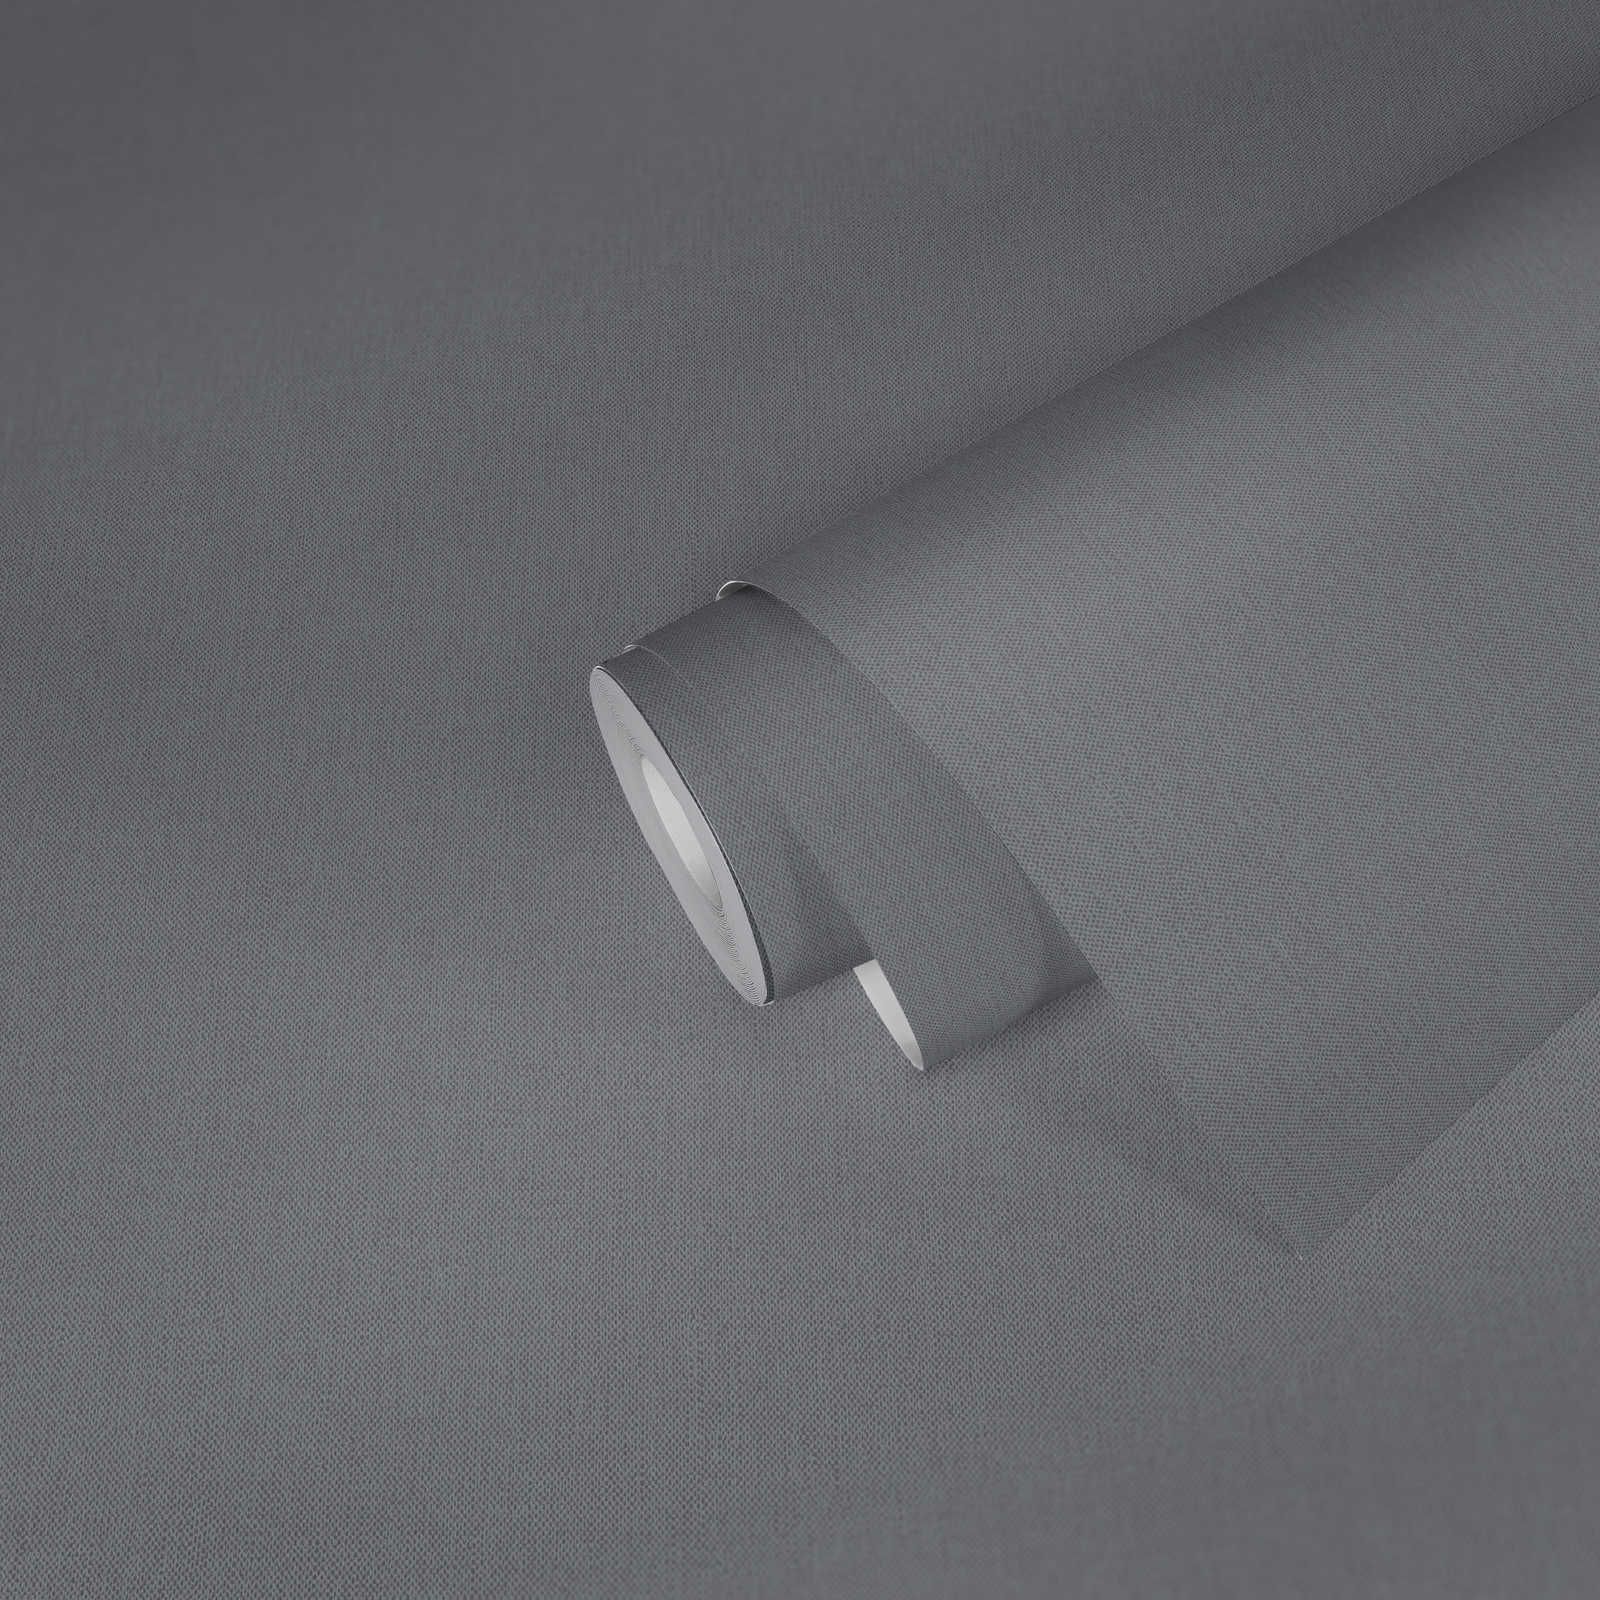             Papier peint aspect lin gris avec structure tissée & surface mate
        